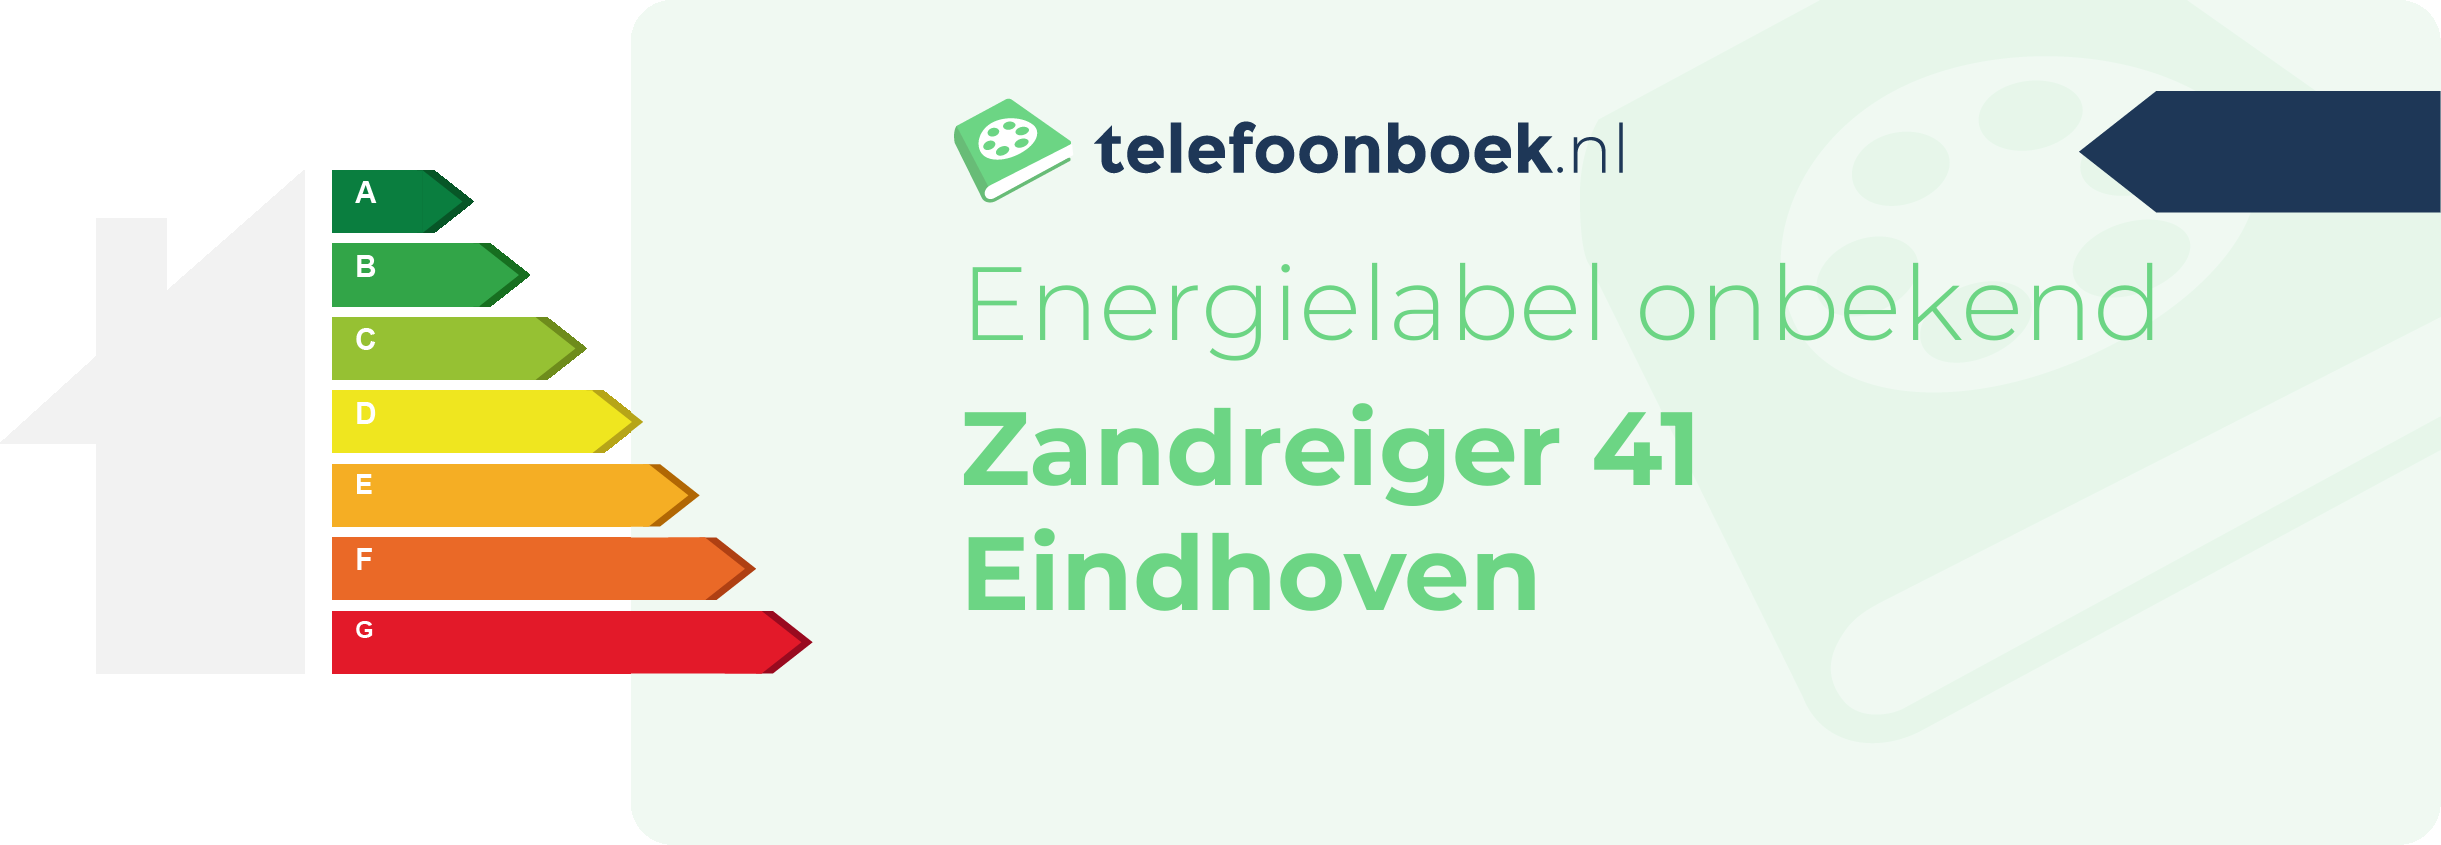 Energielabel Zandreiger 41 Eindhoven